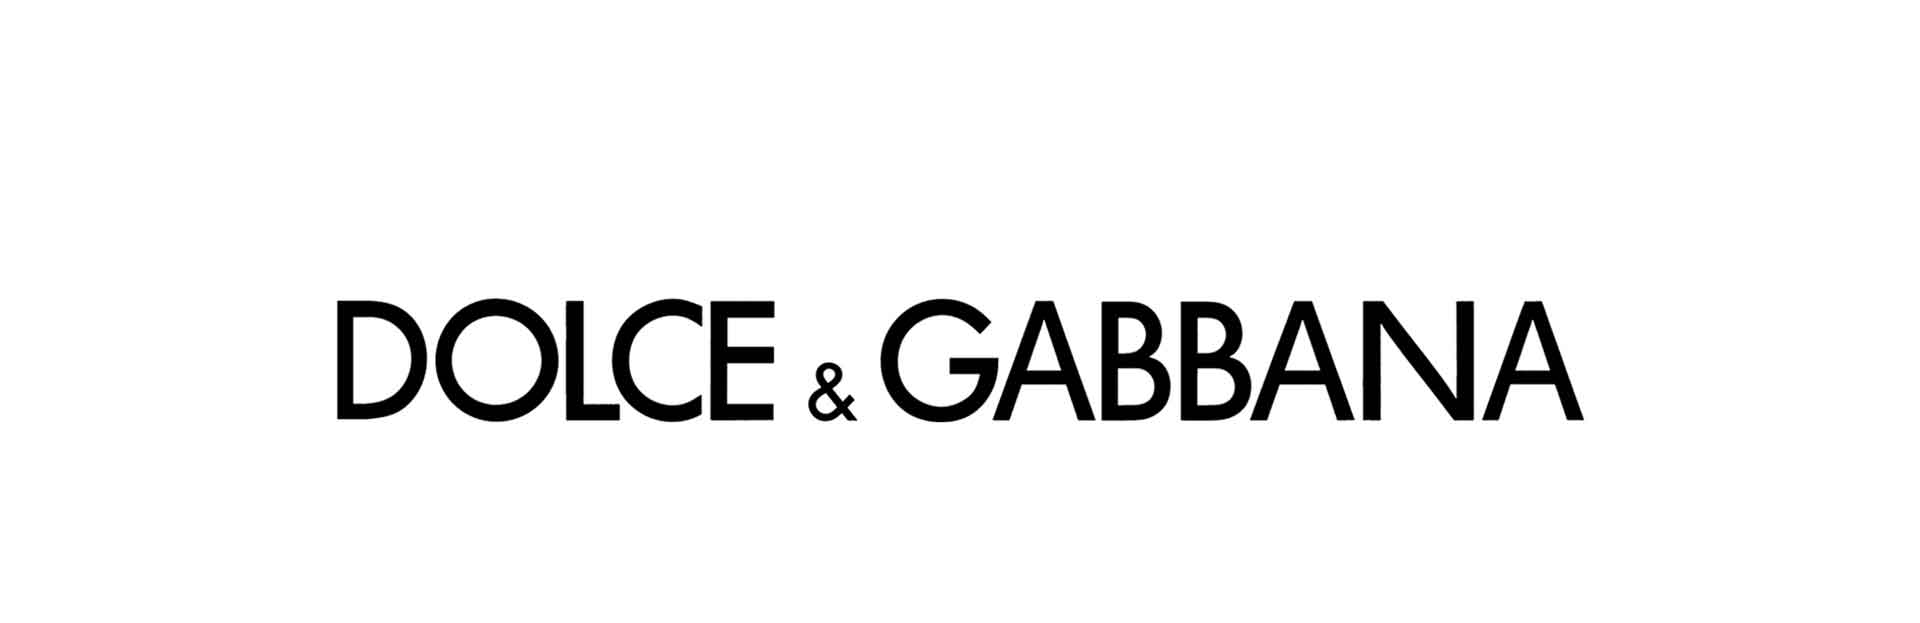 Дольче и габбана логотип фото